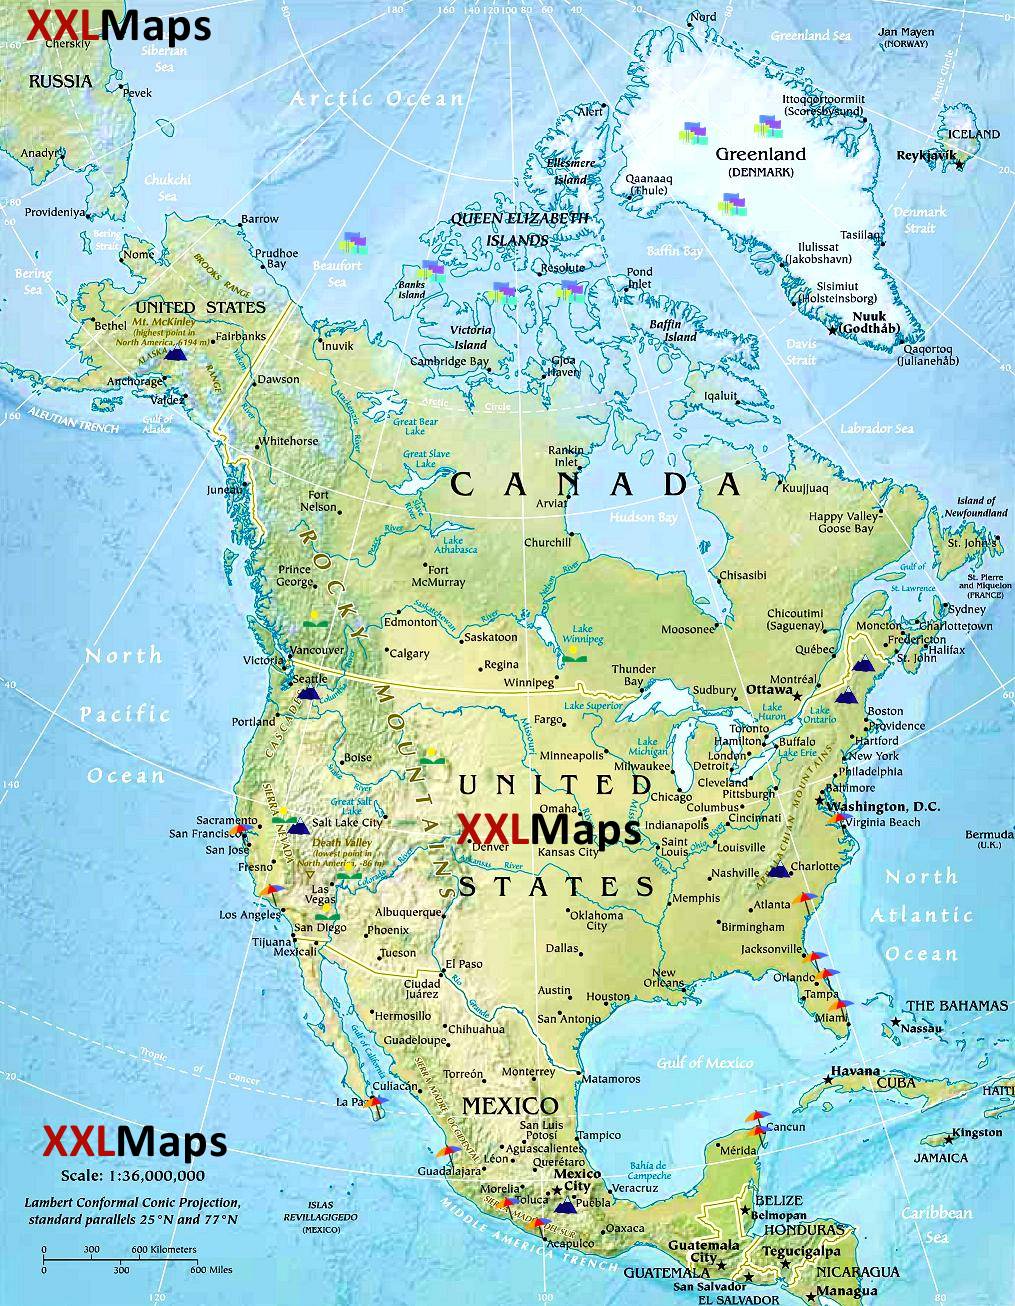 Mappa fisica di America del Nord